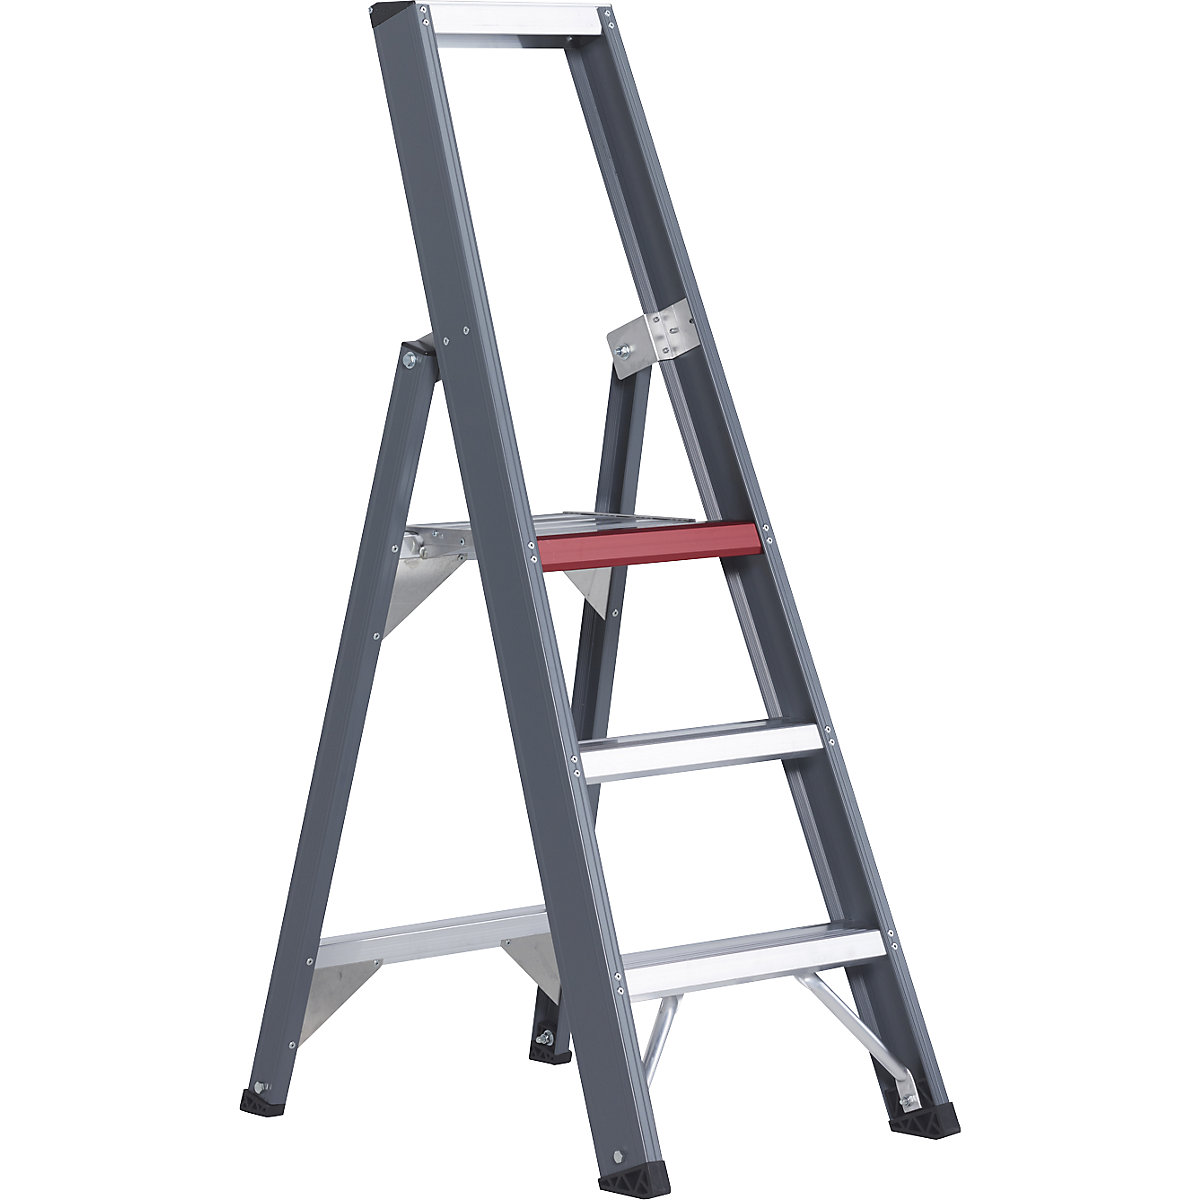 Hliníkový stojaci rebrík so stupňami, pochôdzny z jednej strany - Altrex